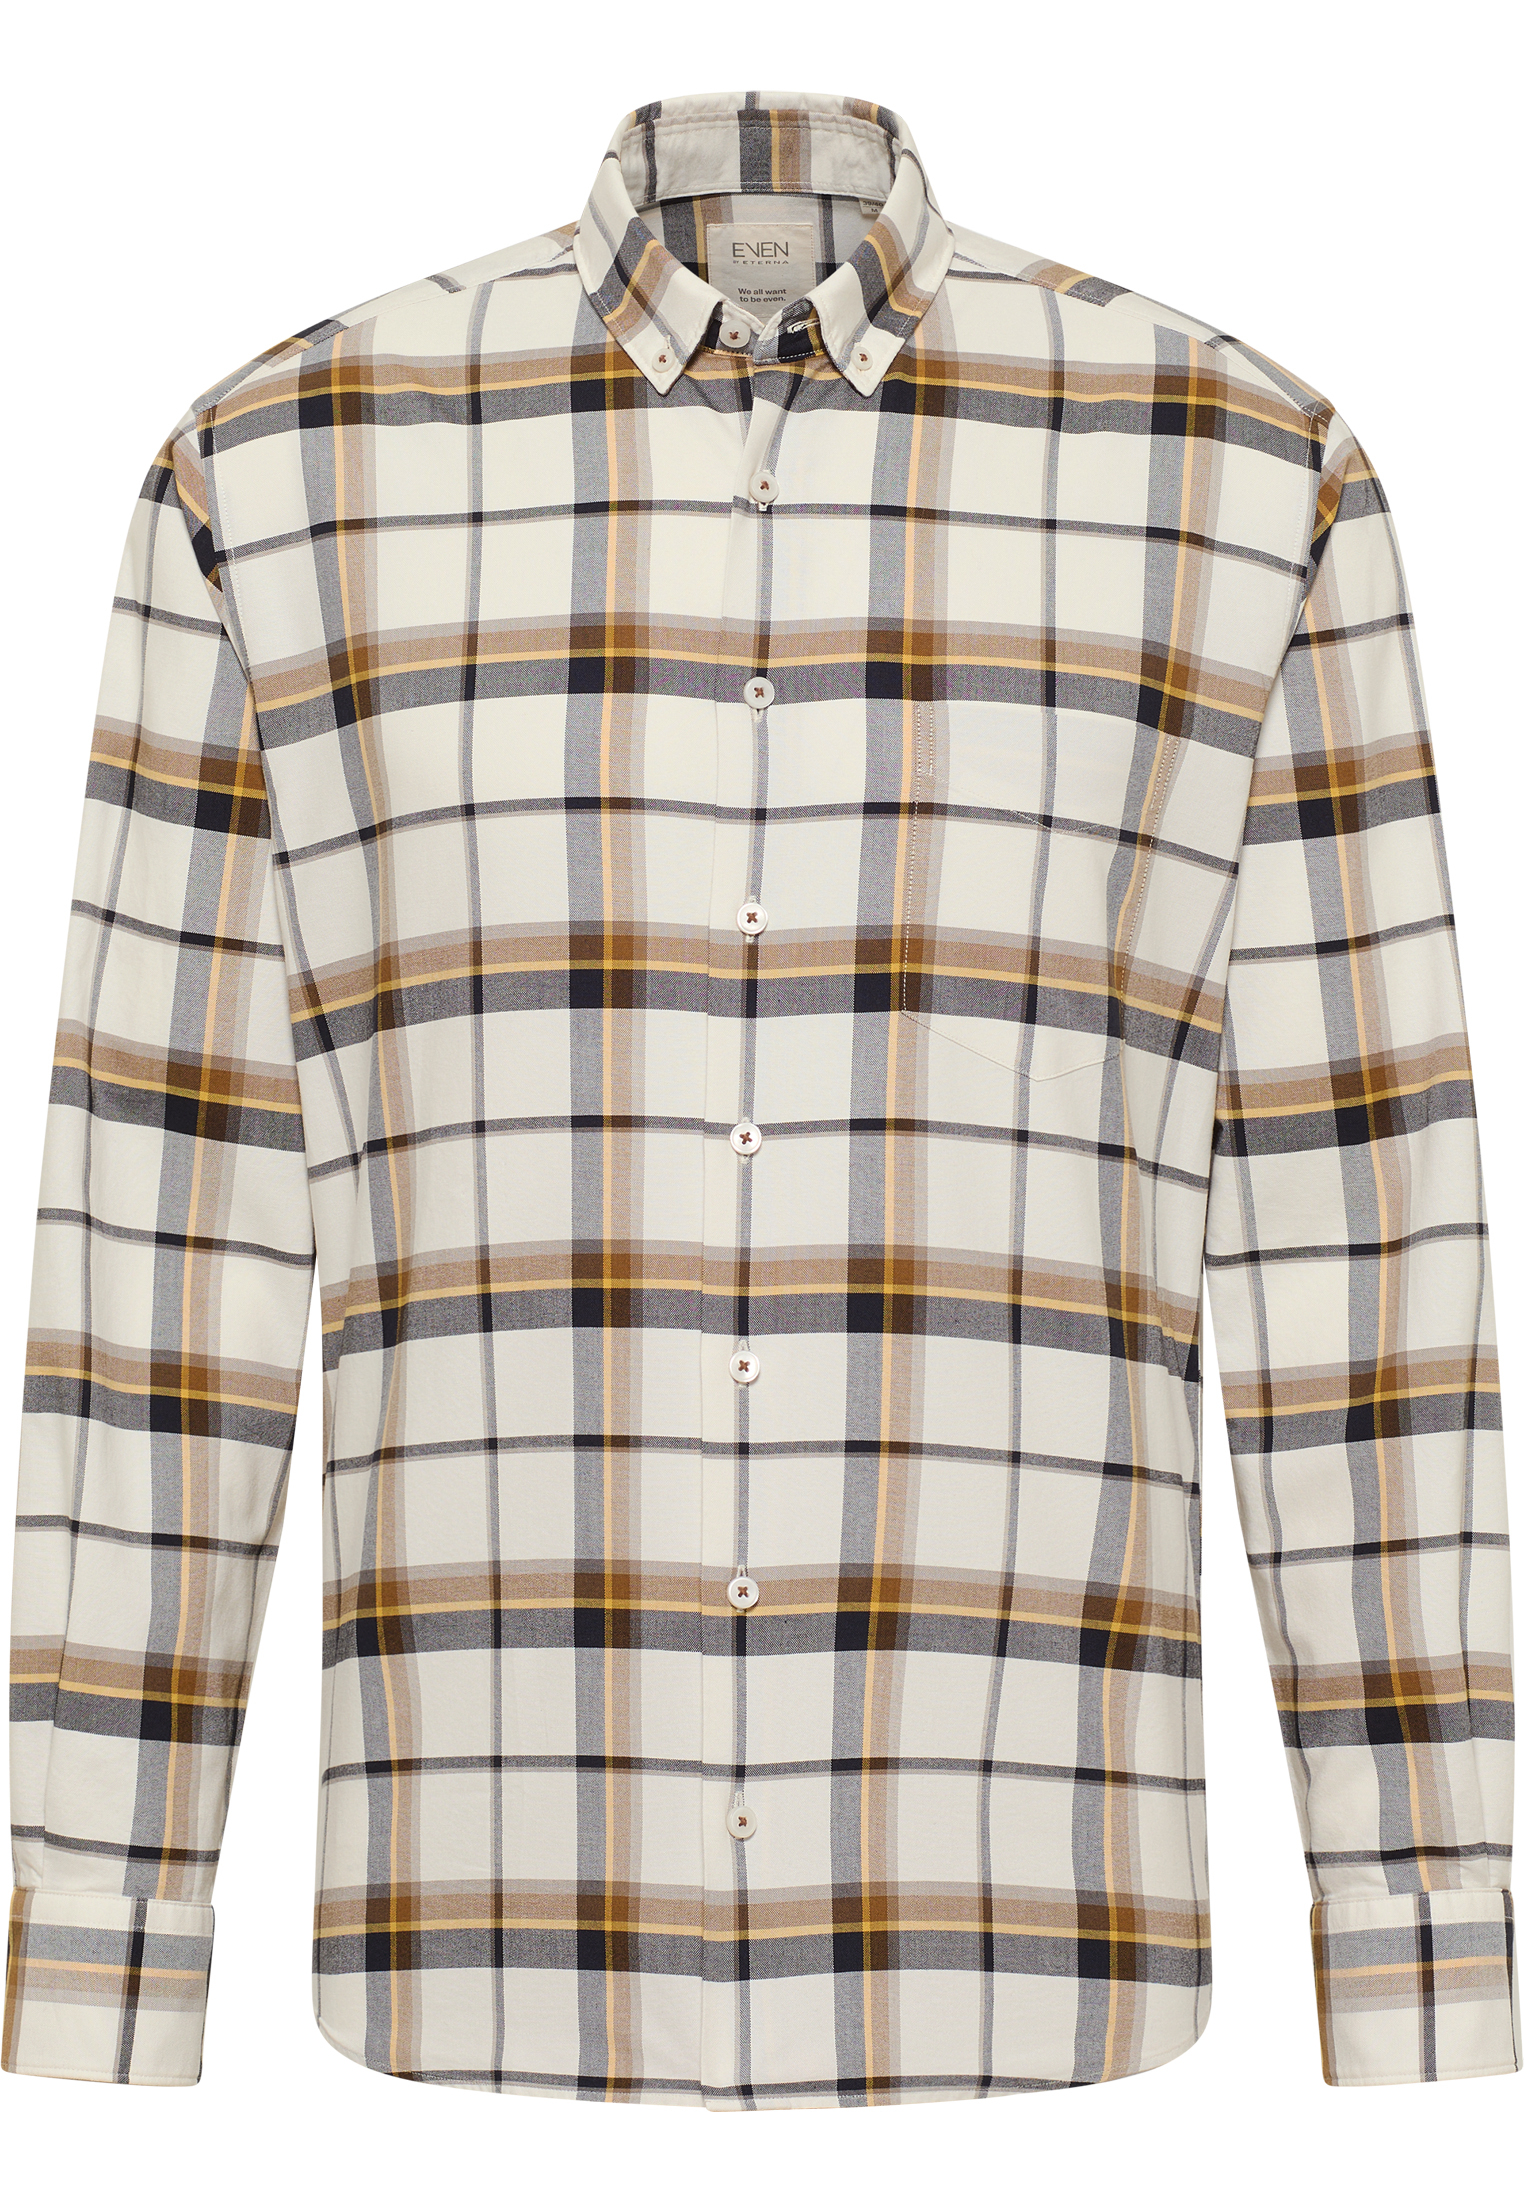 MODERN FIT Shirt in | long beige XL 1SH11420-02-01-XL-1/1 | | | sleeve beige checkered